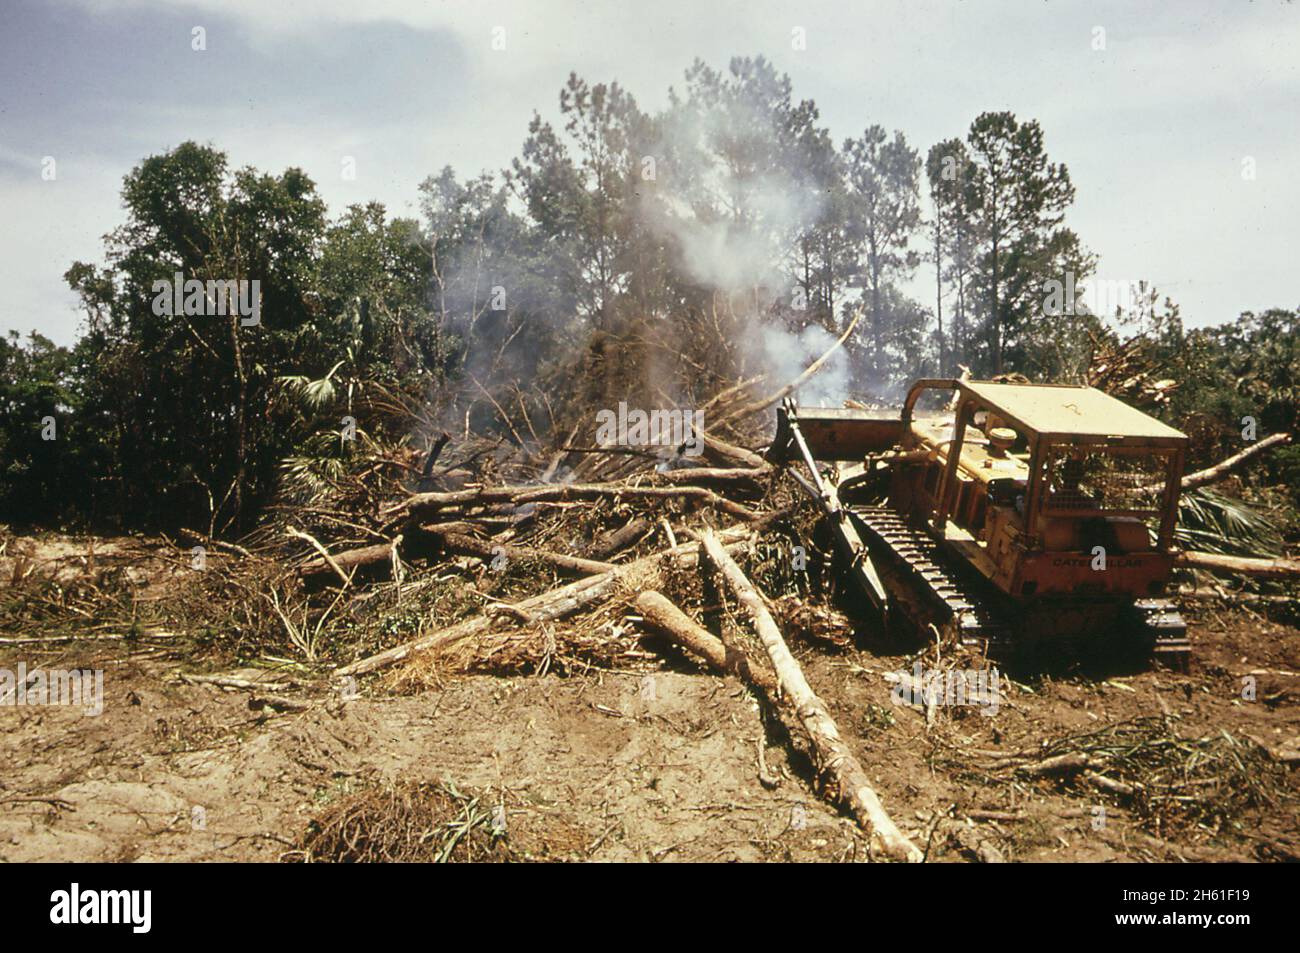 Un bulldozer s'engouge dans une partie d'une forêt pour un terrain de golf sur le développement de l'île Seabrook sur l'île de John's.Mai 1973 Banque D'Images